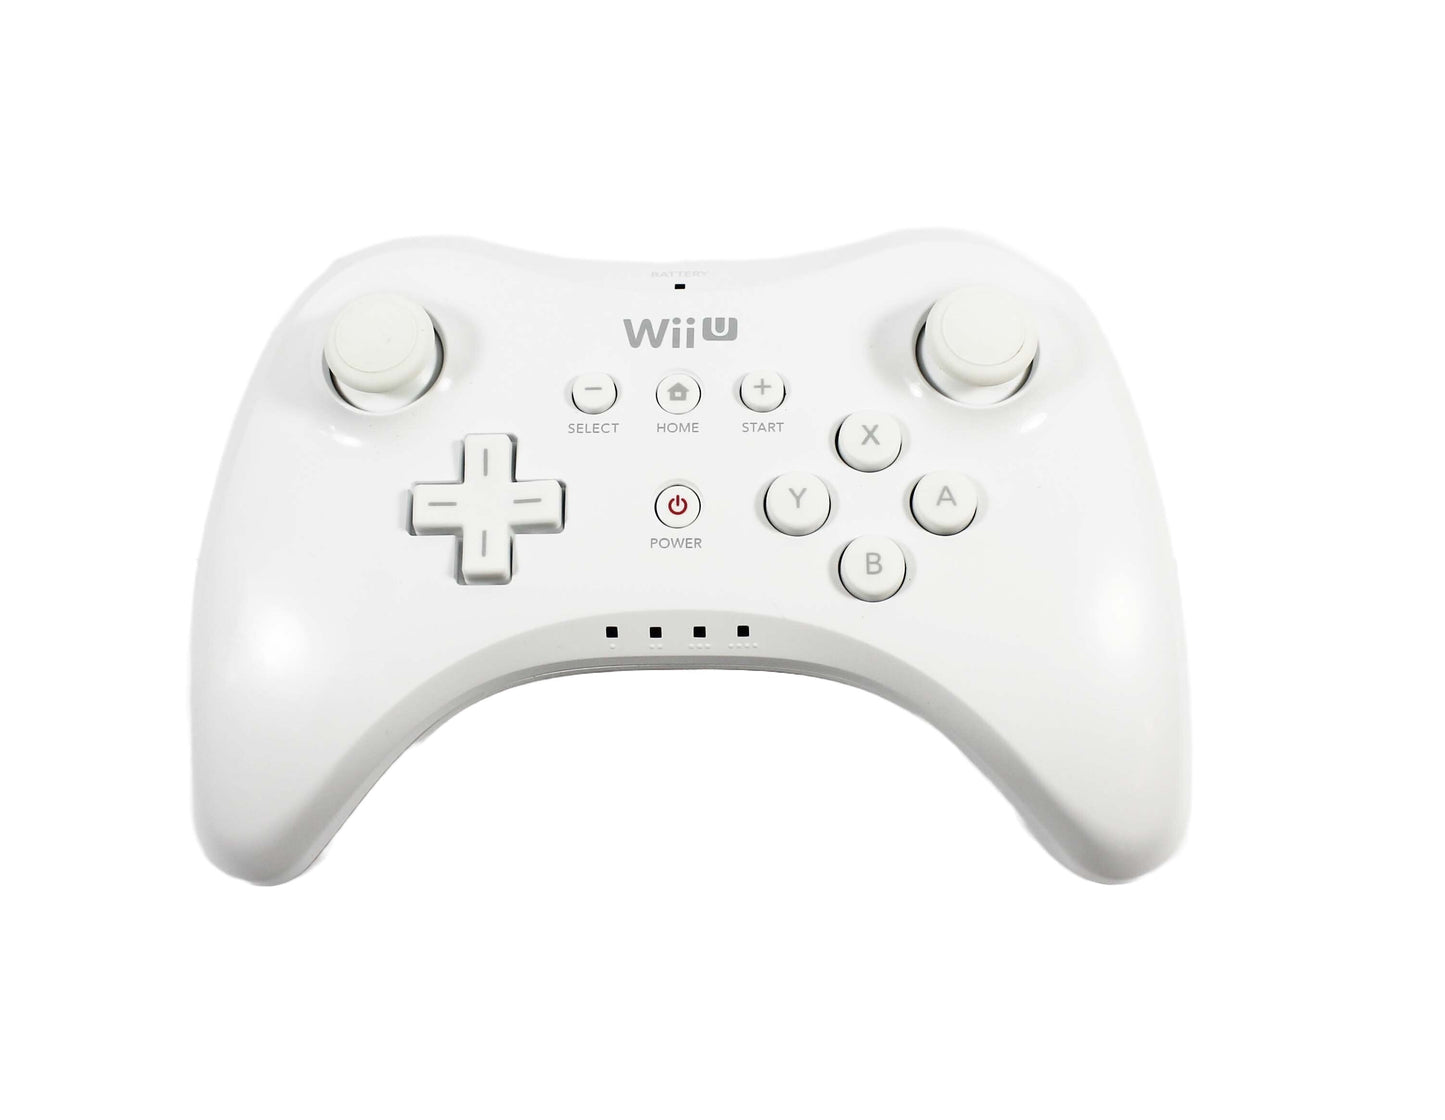 Wii U Pro Controller - White